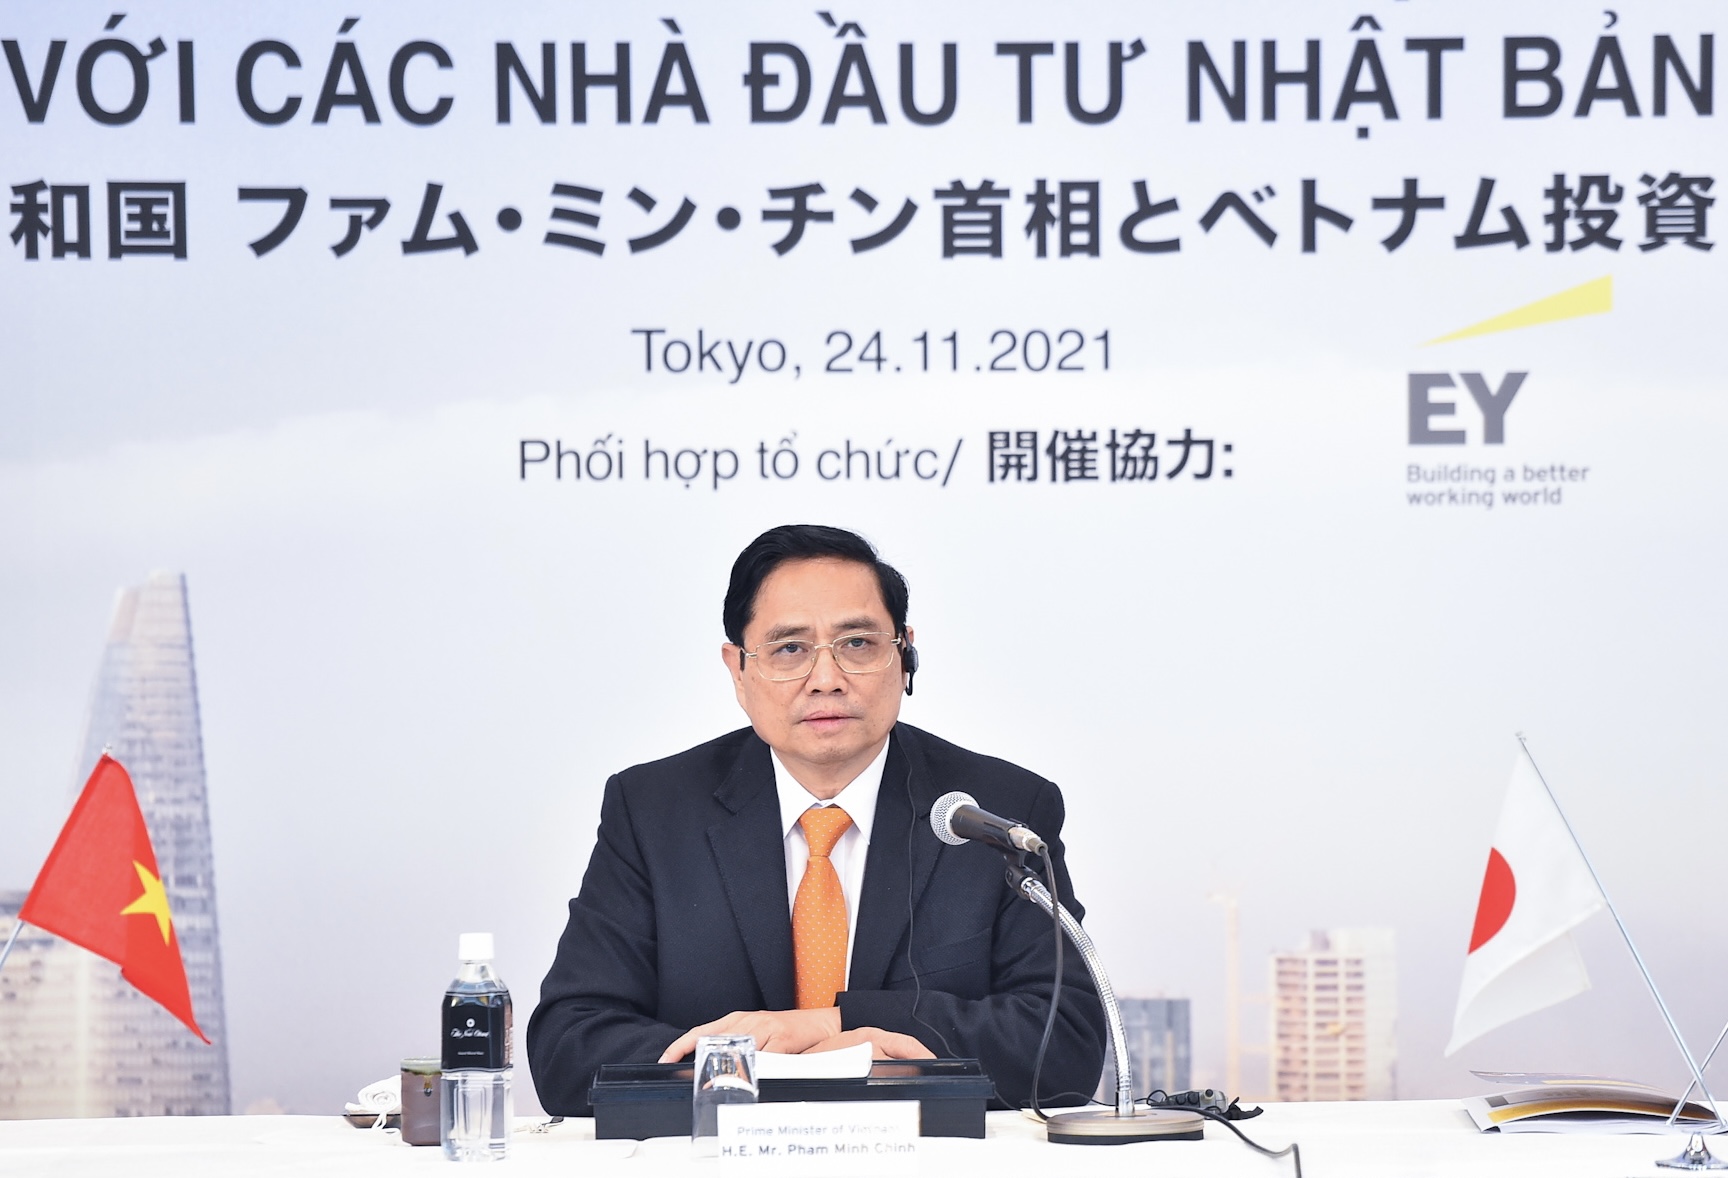 Thủ tướng mong muốn các DN, nhà đầu tư Nhật quan tâm đầu tư vào những lĩnh vực định hướng ưu tiên của Việt Nam